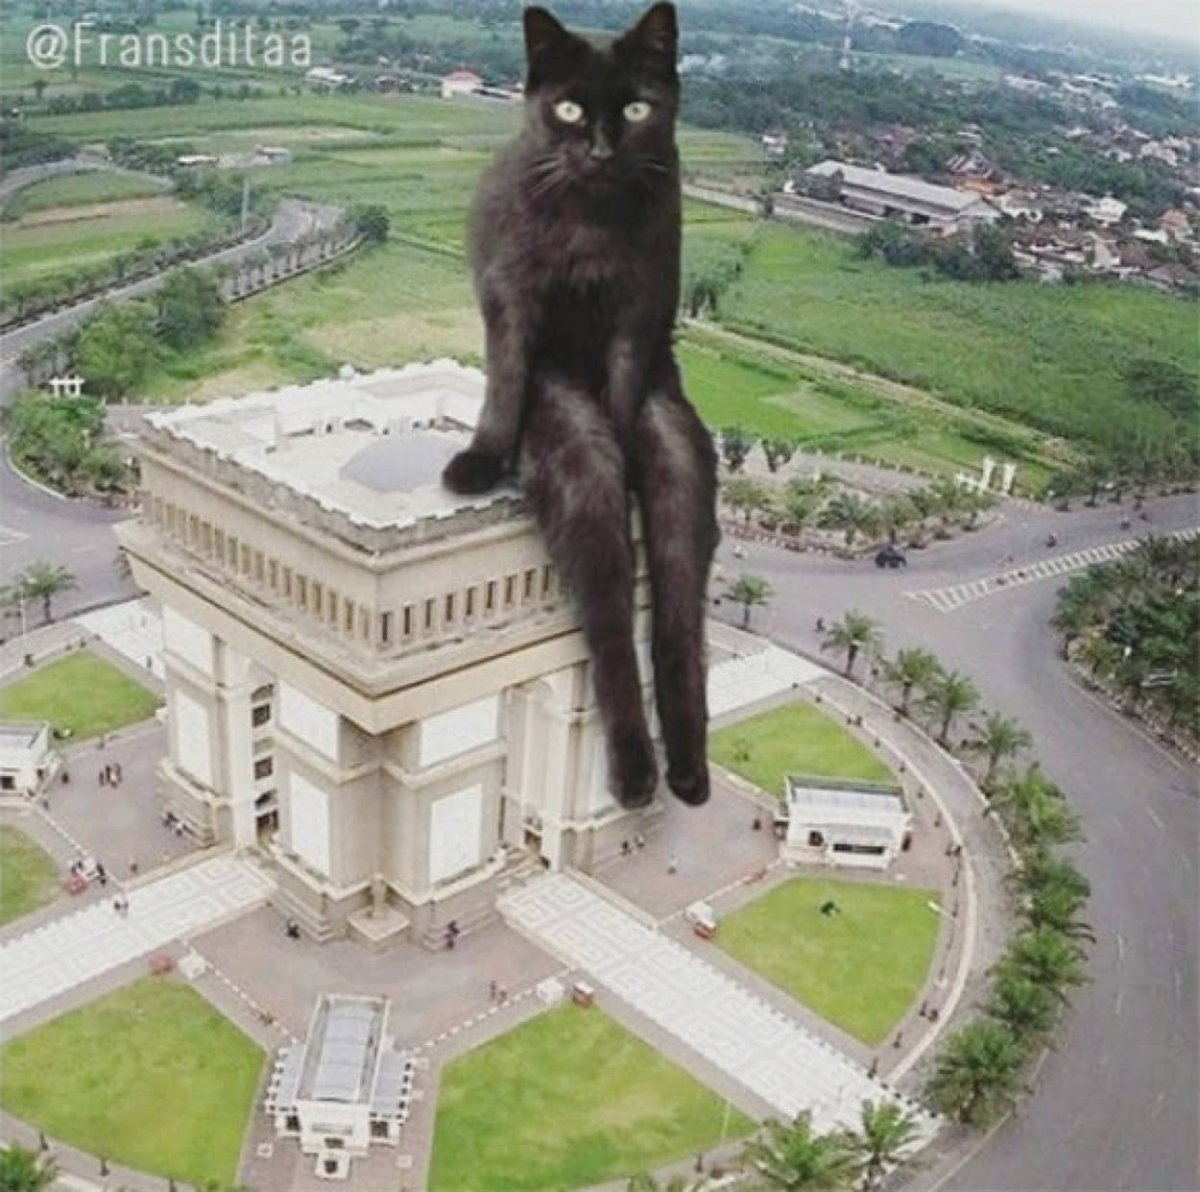 Неделя большими кошками. Франсдита Муафидин. Франсдита Муафидин коты. Гигантская кошка в городе. Огромный кот в городе.